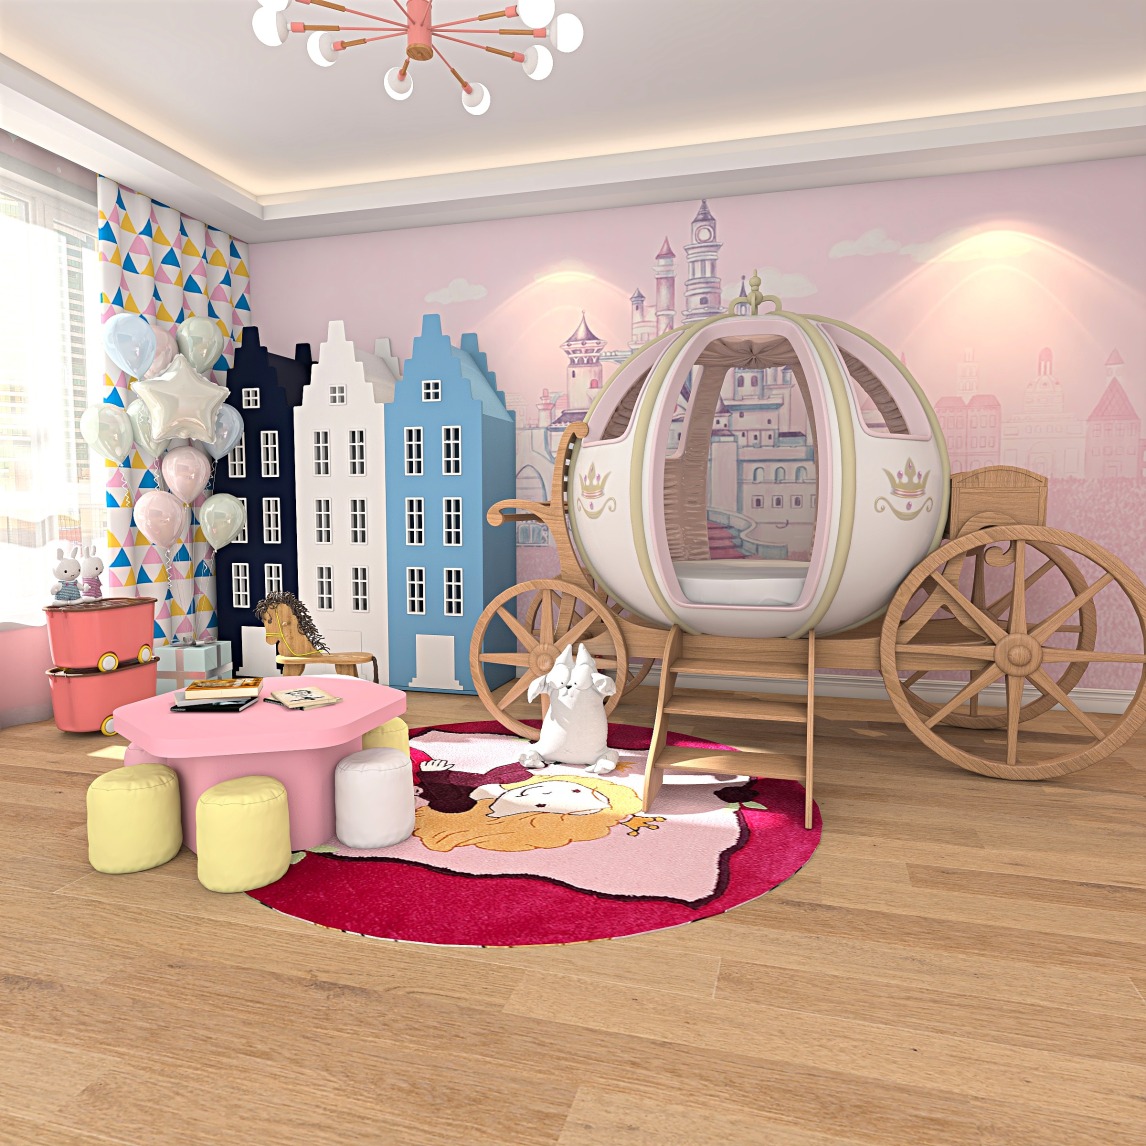 公主房间图片大全 给孩子一个造梦空间-欧派家居